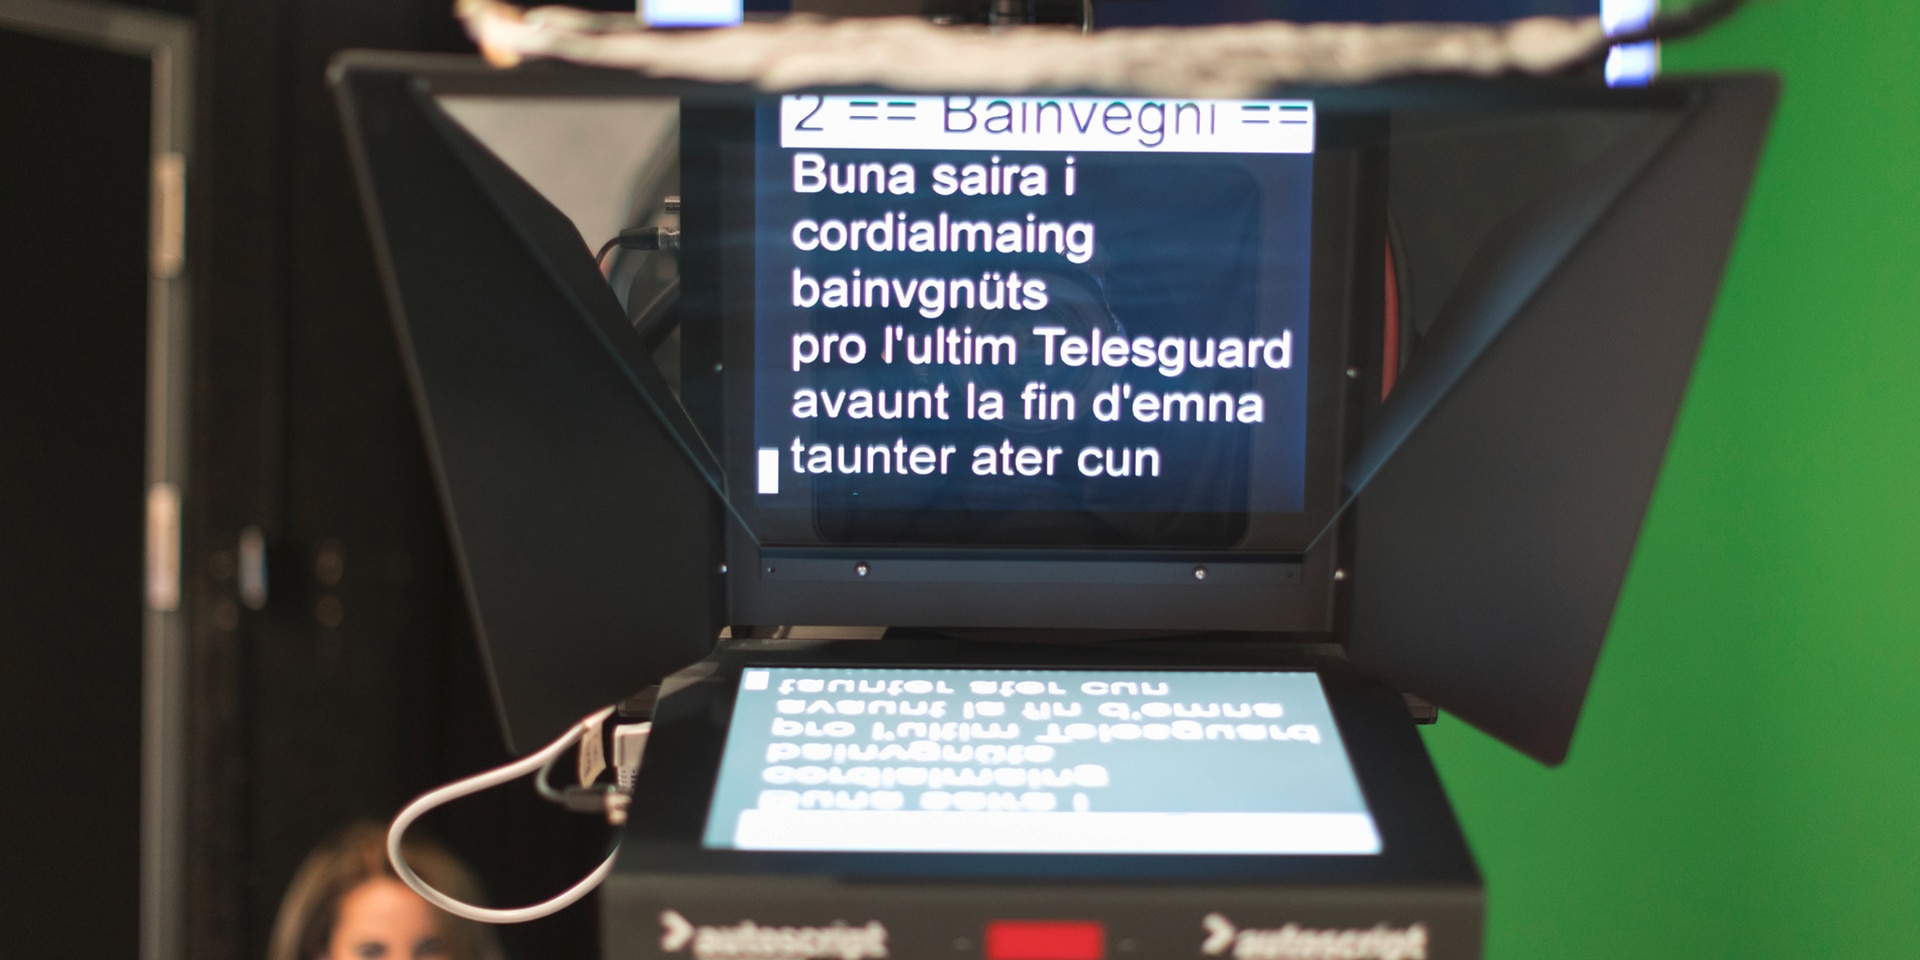 Präsentation eines Beitrags in rätoromanischer Sprache auf dem Bildschirm im Fernsehstudio.